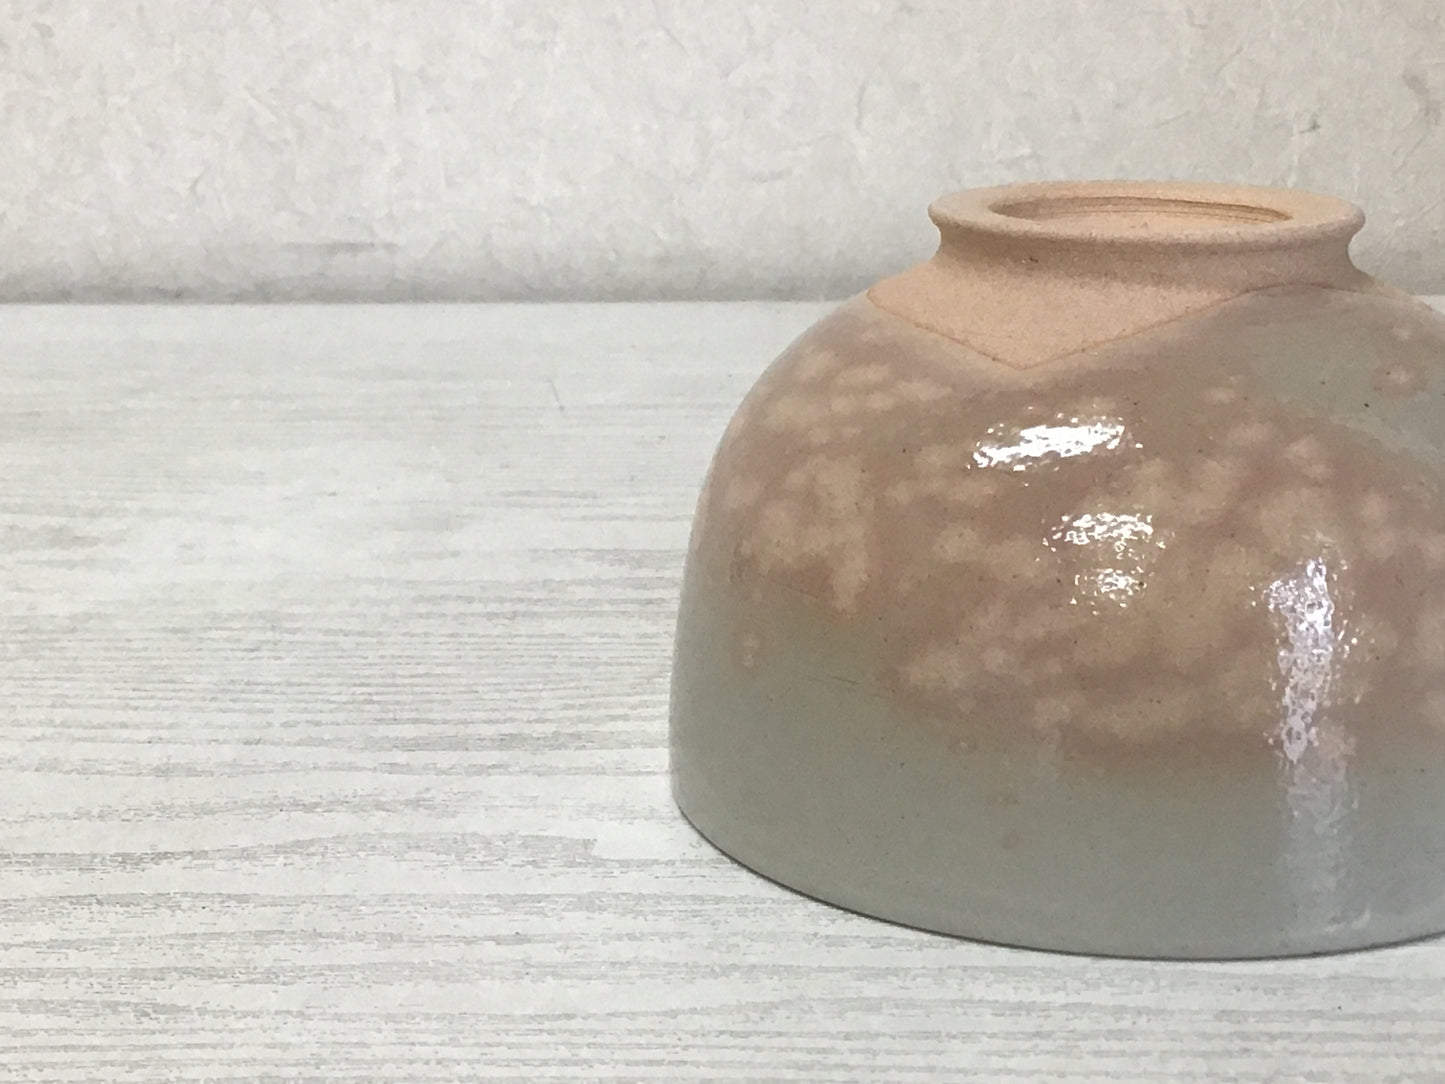 Y1478 CHAWAN Akahada-ware signed box Japanese bowl pottery Japan tea ceremony